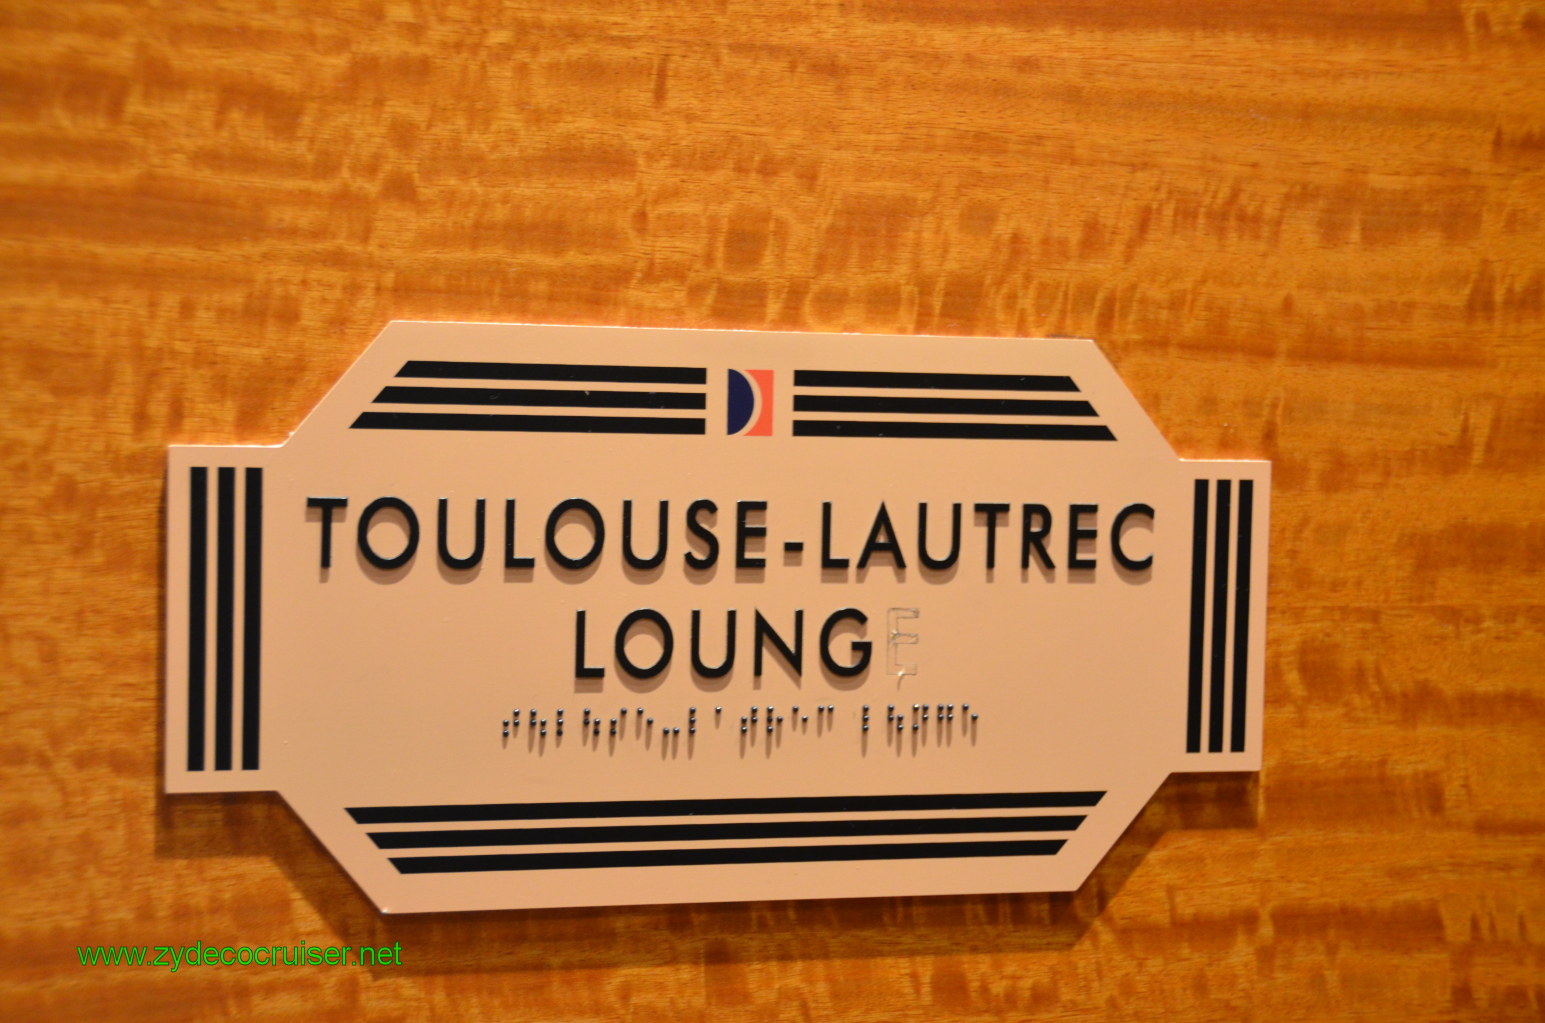 042: Carnival Conquest, Nov 18. 2011, Cozumel, Toulouse-Lautrec Lounge, 